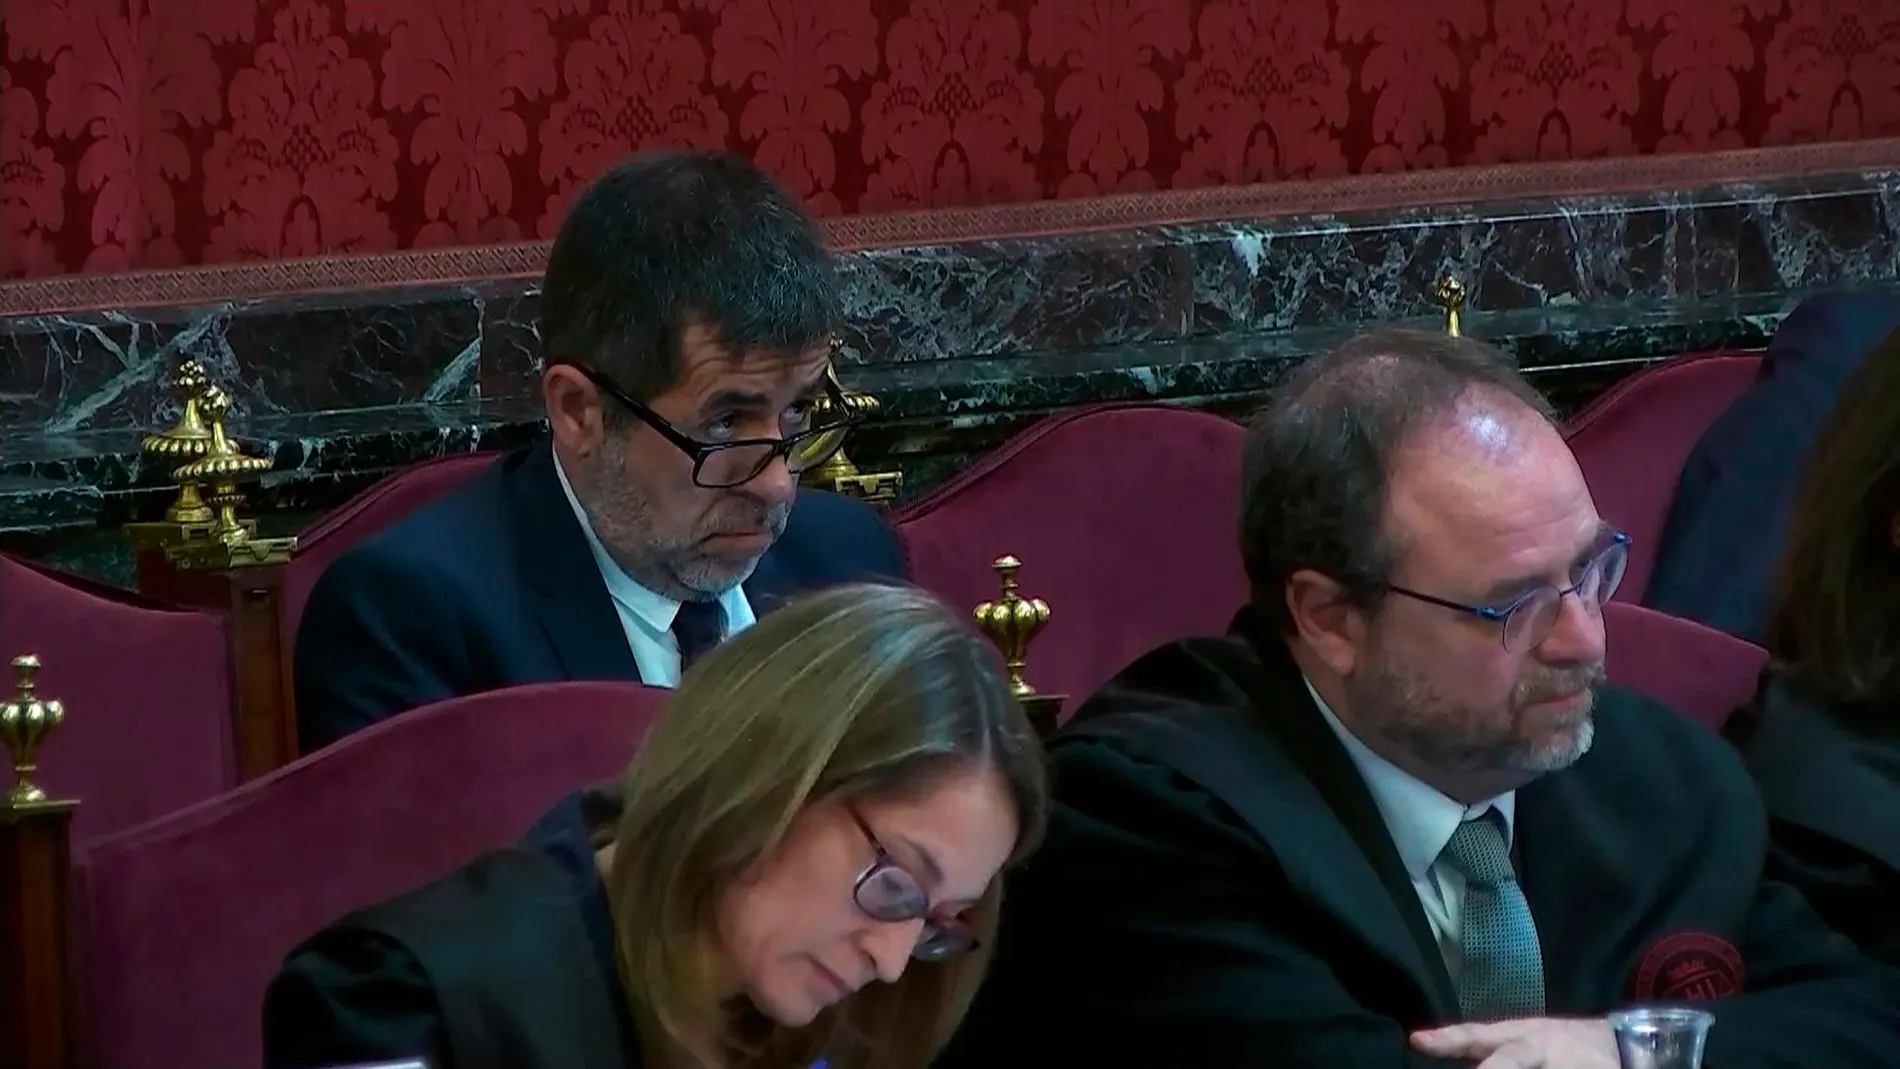 Imagen tomada de la señal institucional de Tribunal Supremo de Jordi Sànchez durante una nueva jornada del juicio del "procés"